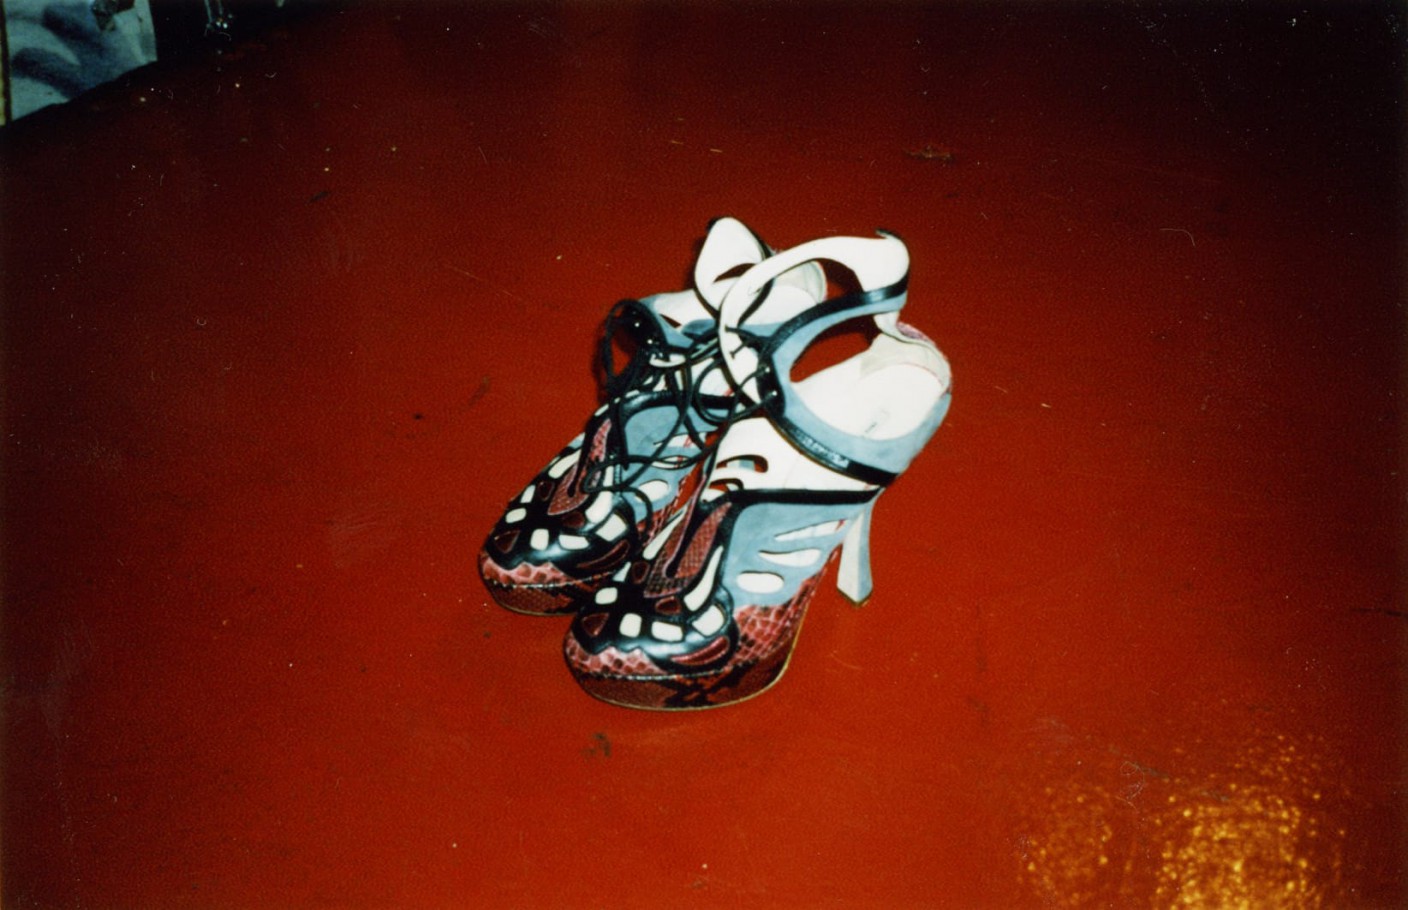 Miu Miu high heels on a red floor